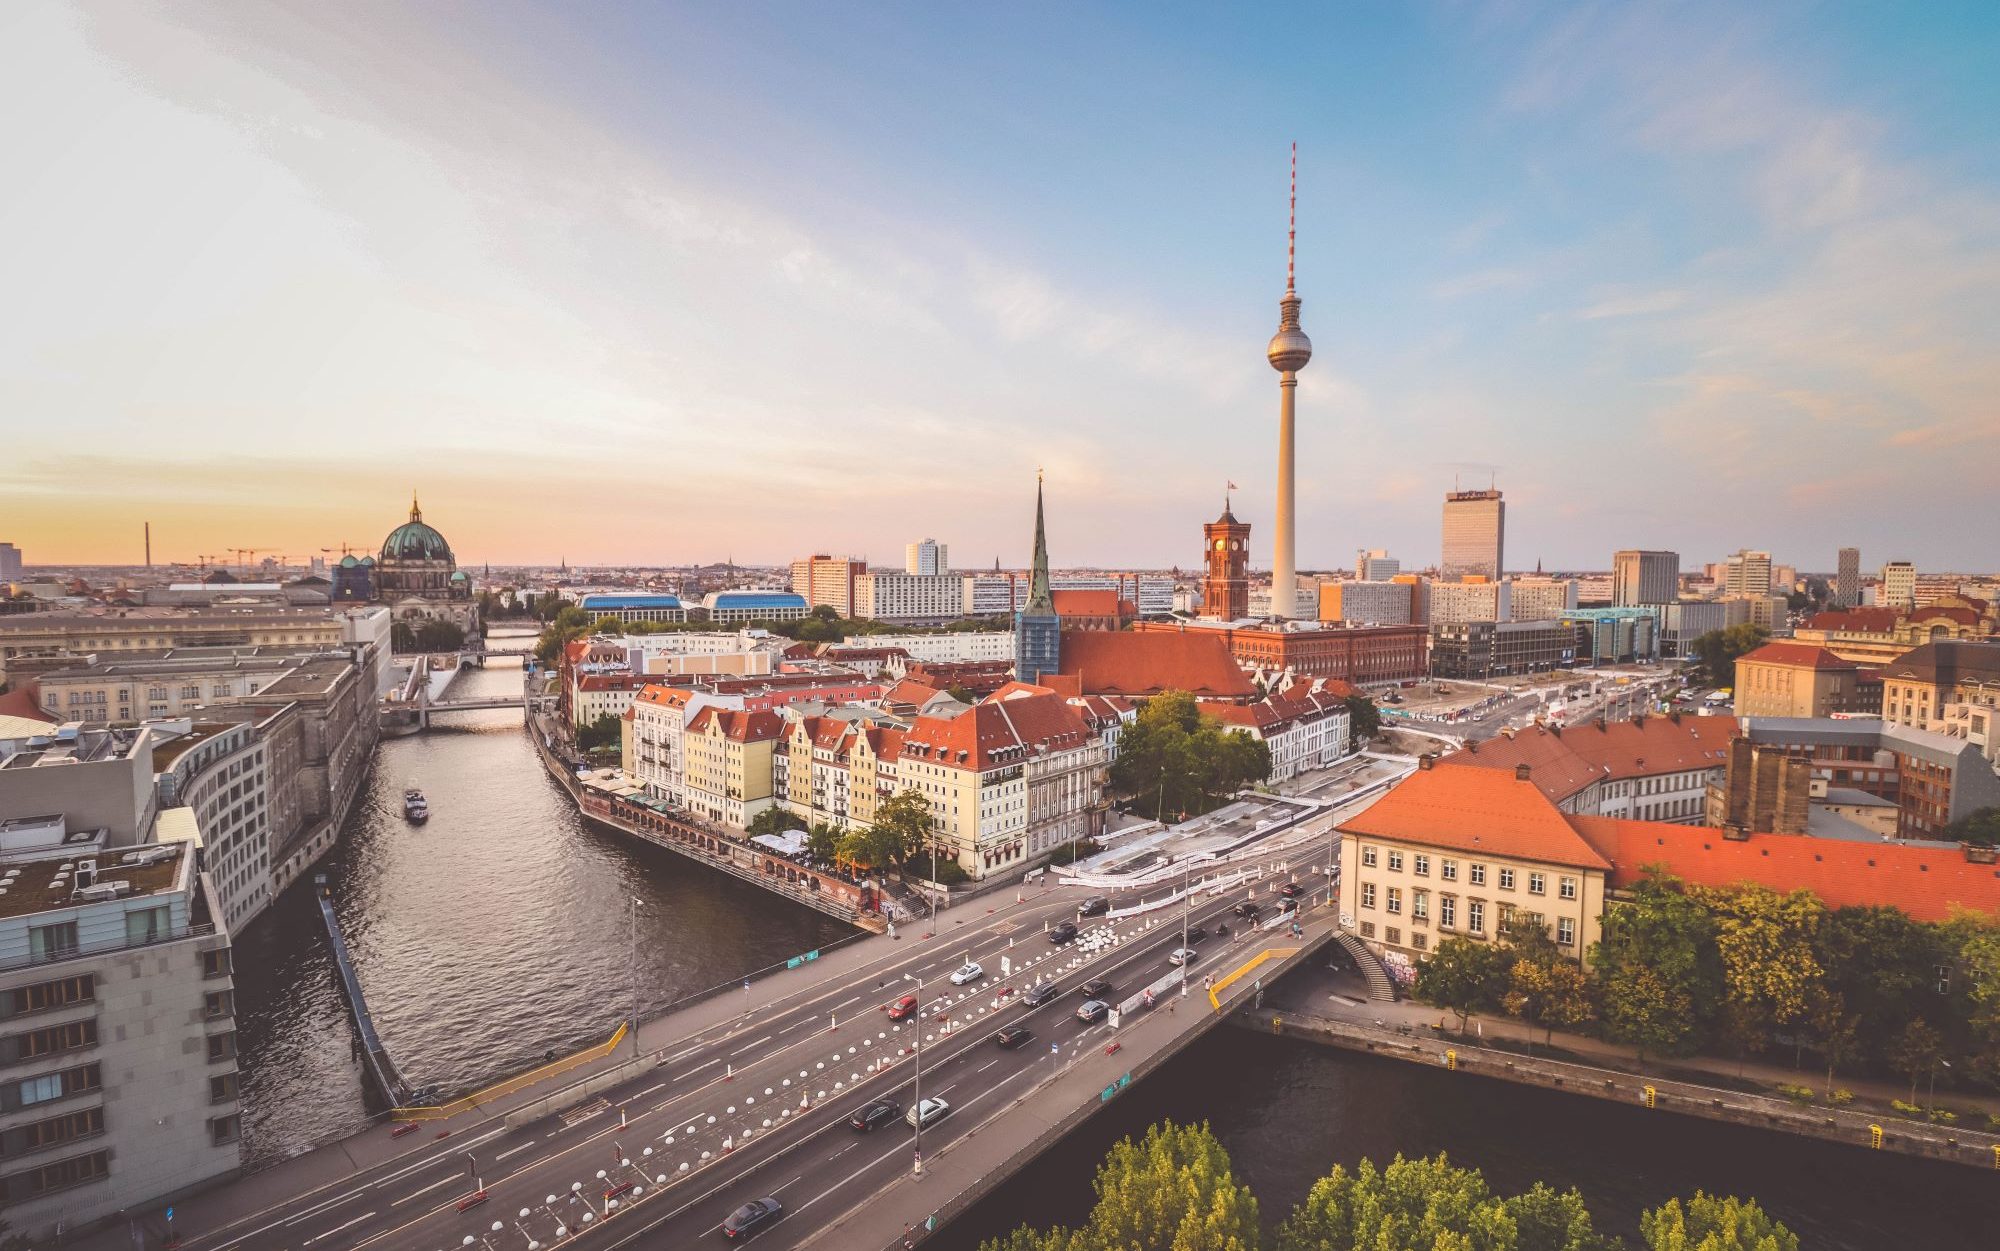 Blick auf die Stadt Berlin im Hintergrund der Fernsehturm